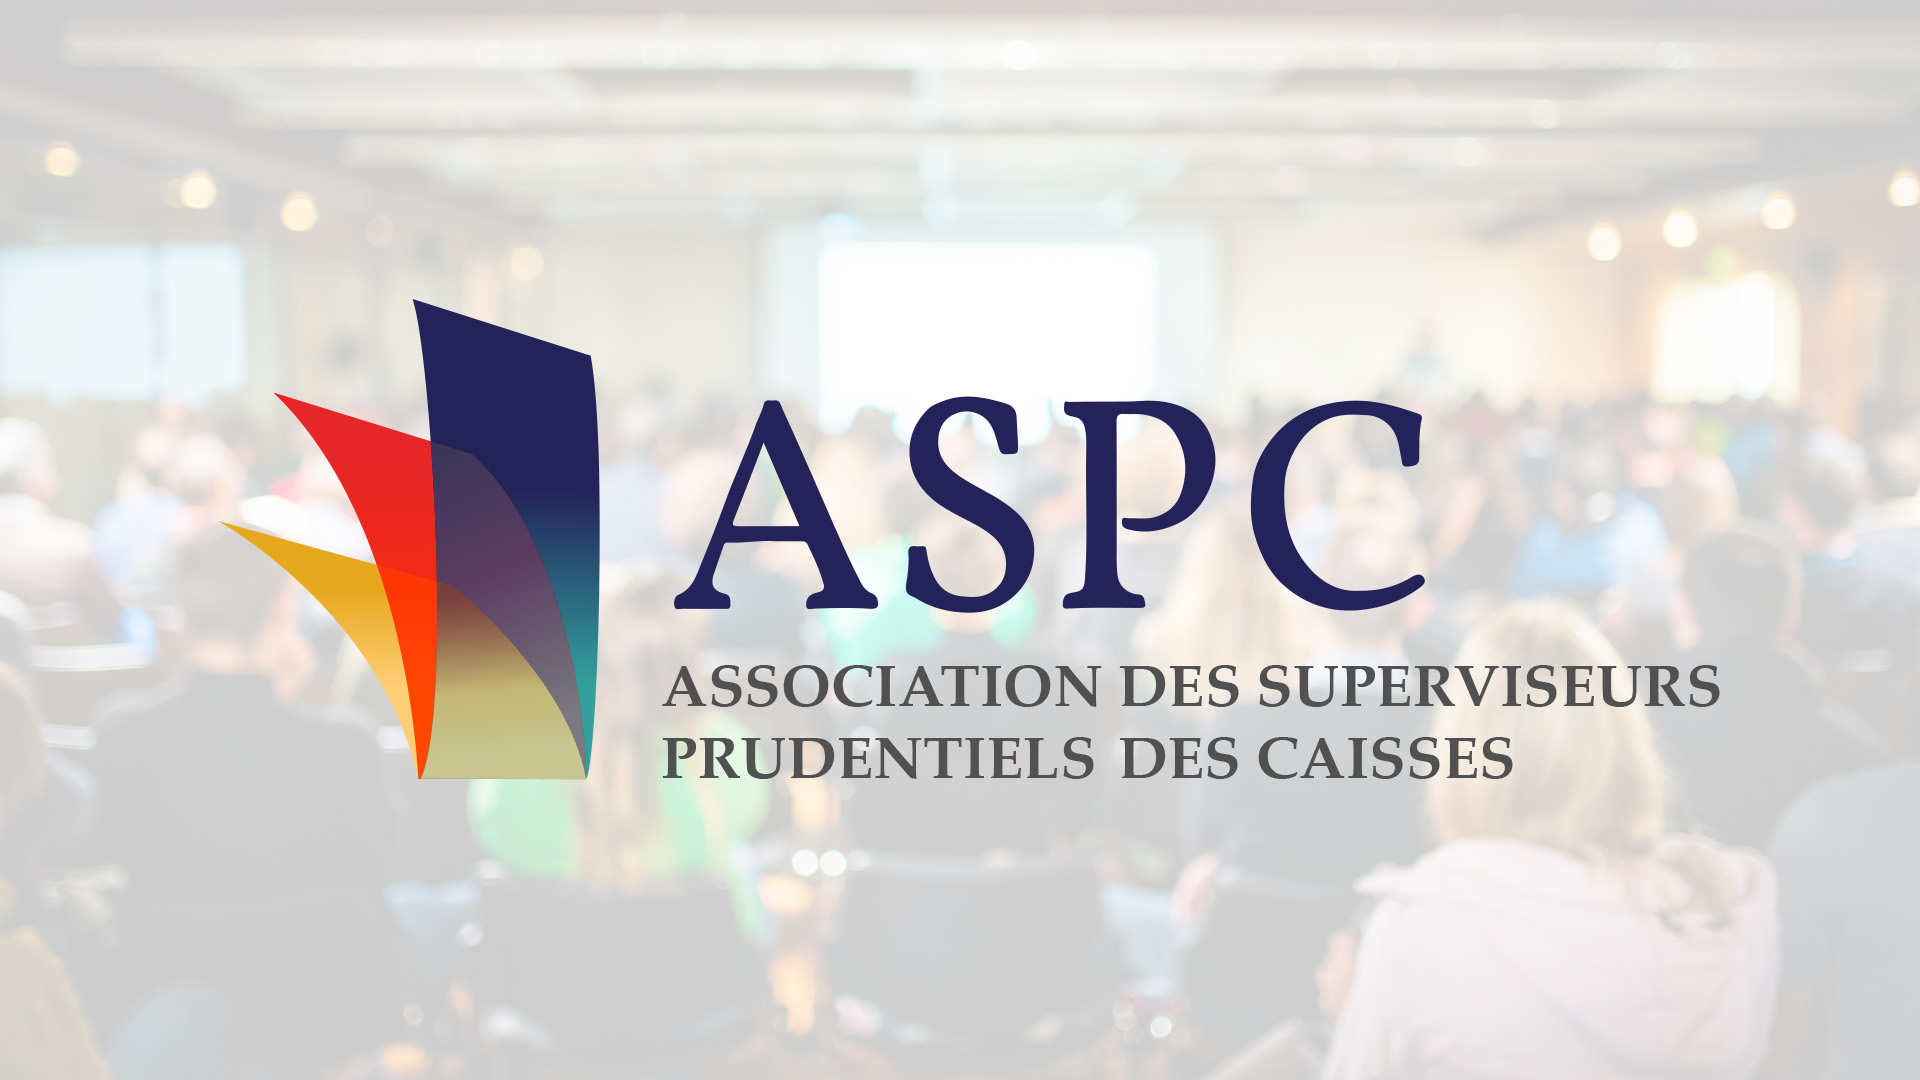 Assemblée annuelle de l’Association des superviseurs prudentiels des caisses (ASPC)